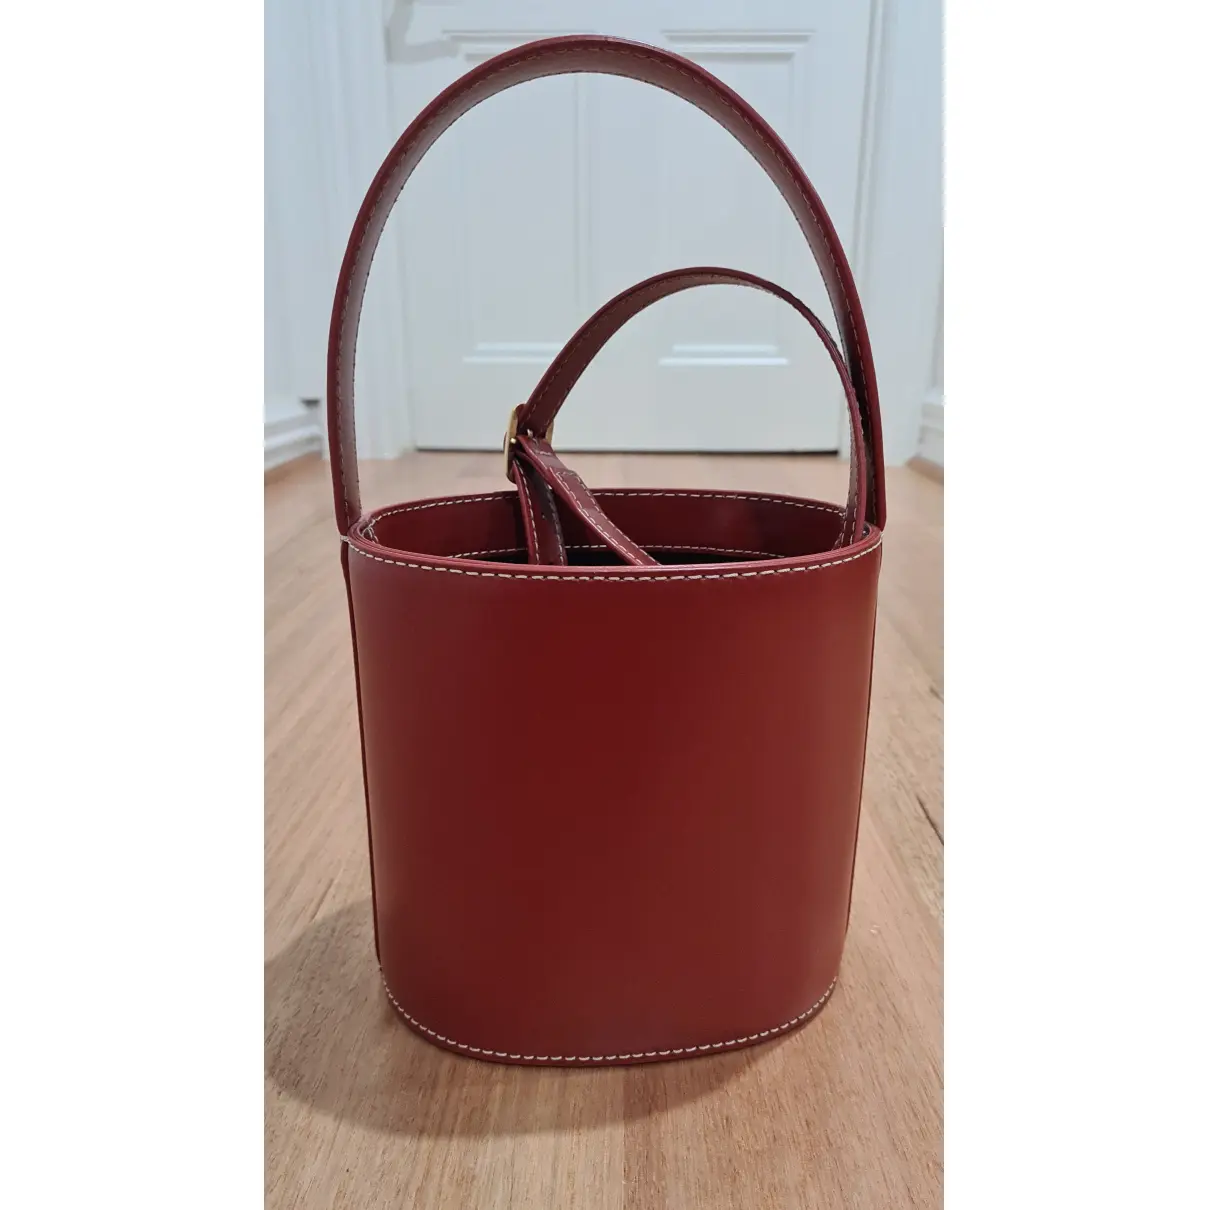 Buy Staud Bisset leather handbag online